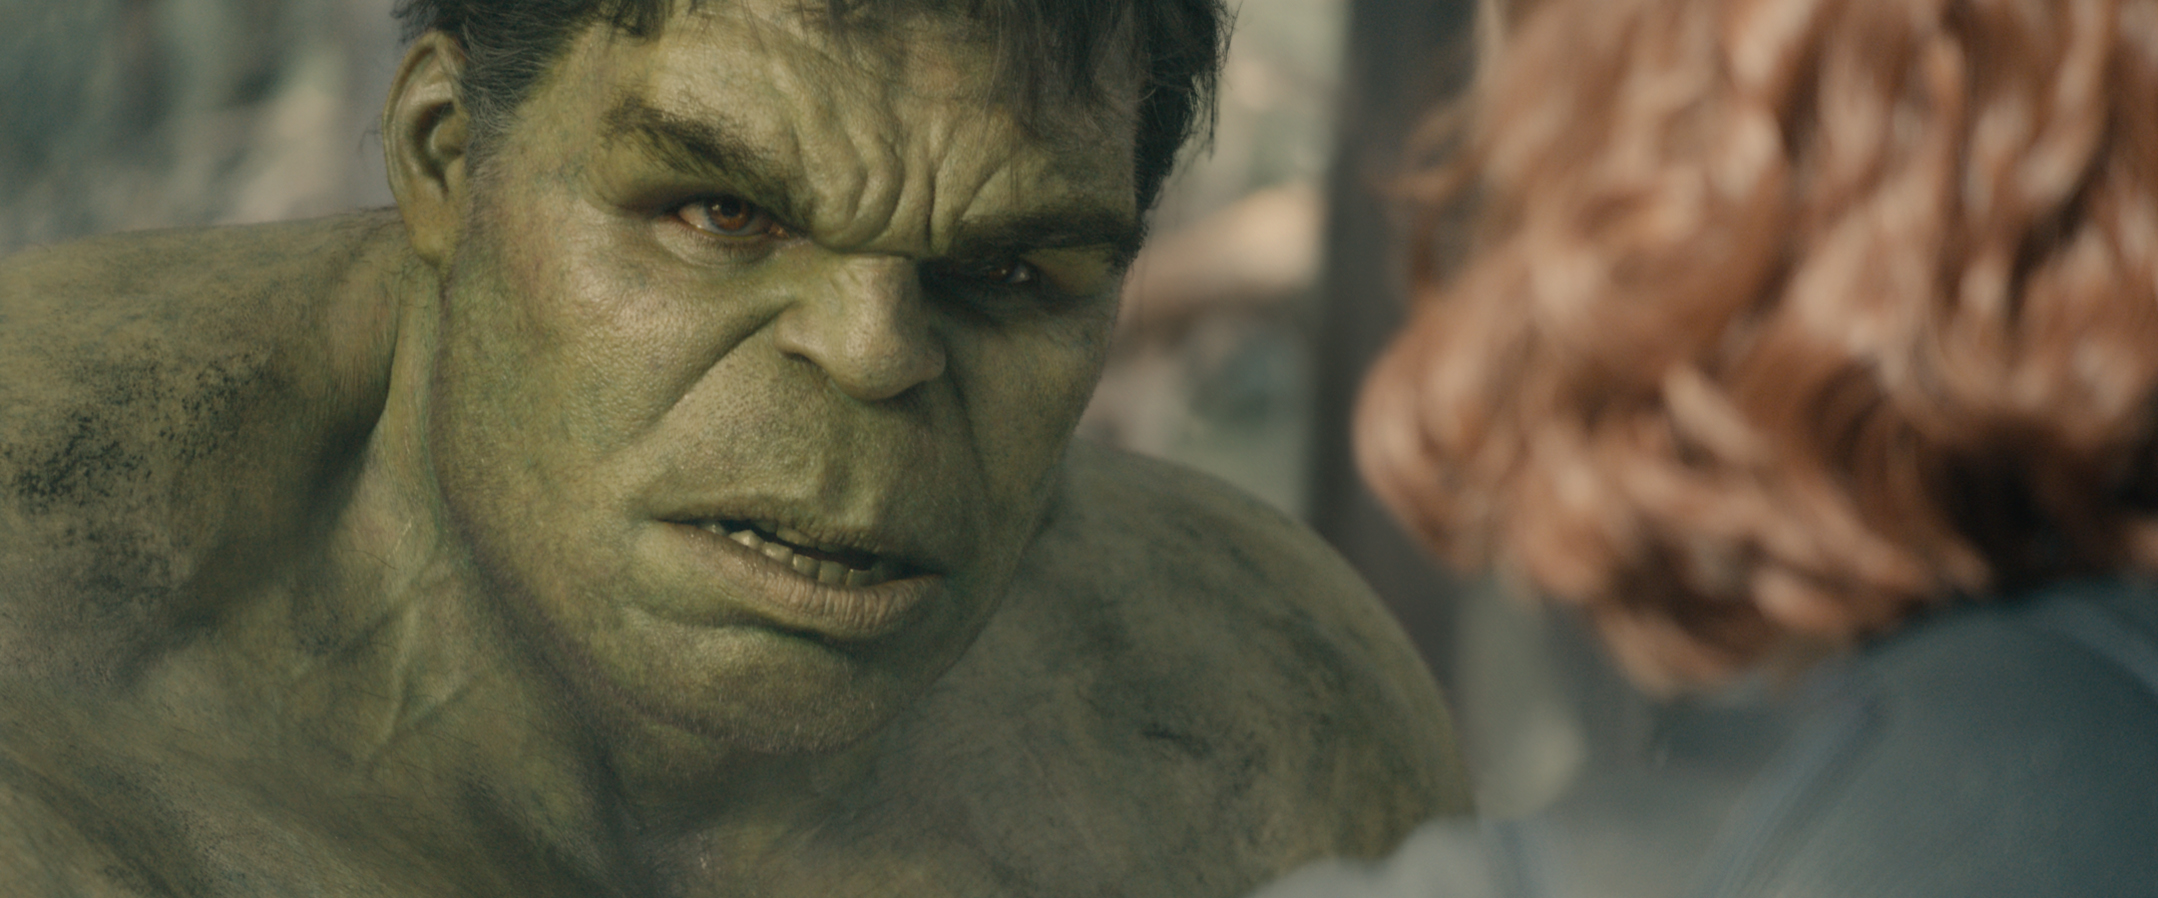 15- هالک (Hulk)